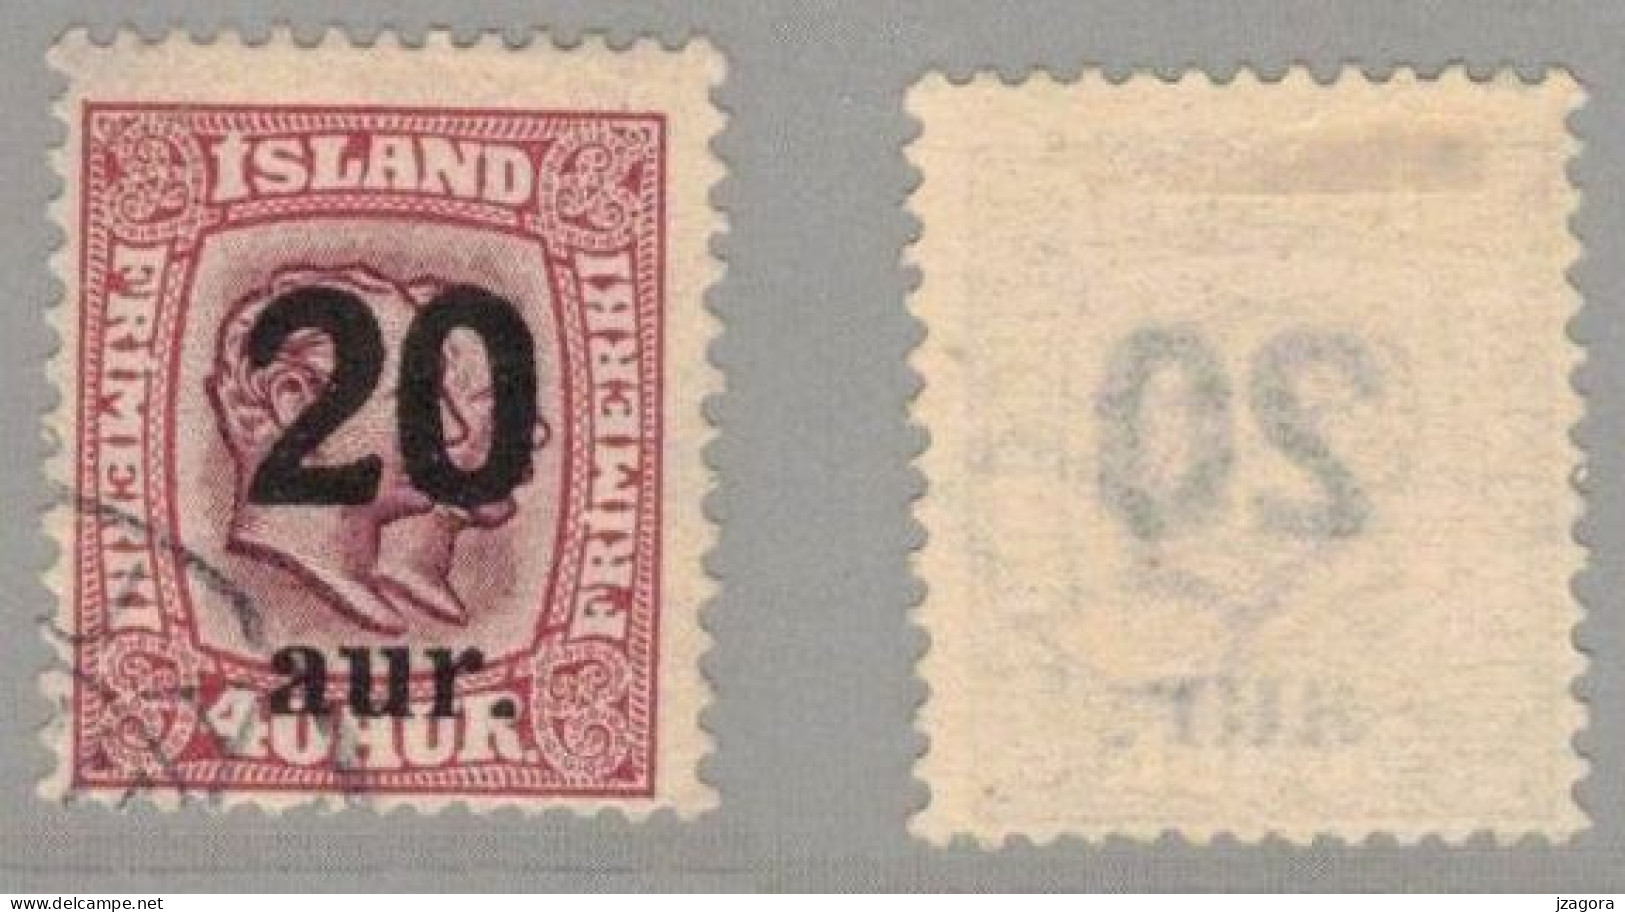 ISLAND ICELAND  1922 OVERPRINT 20 ON 40 AUR - MI 107 SC 134 FACIT 106 USED - Used Stamps